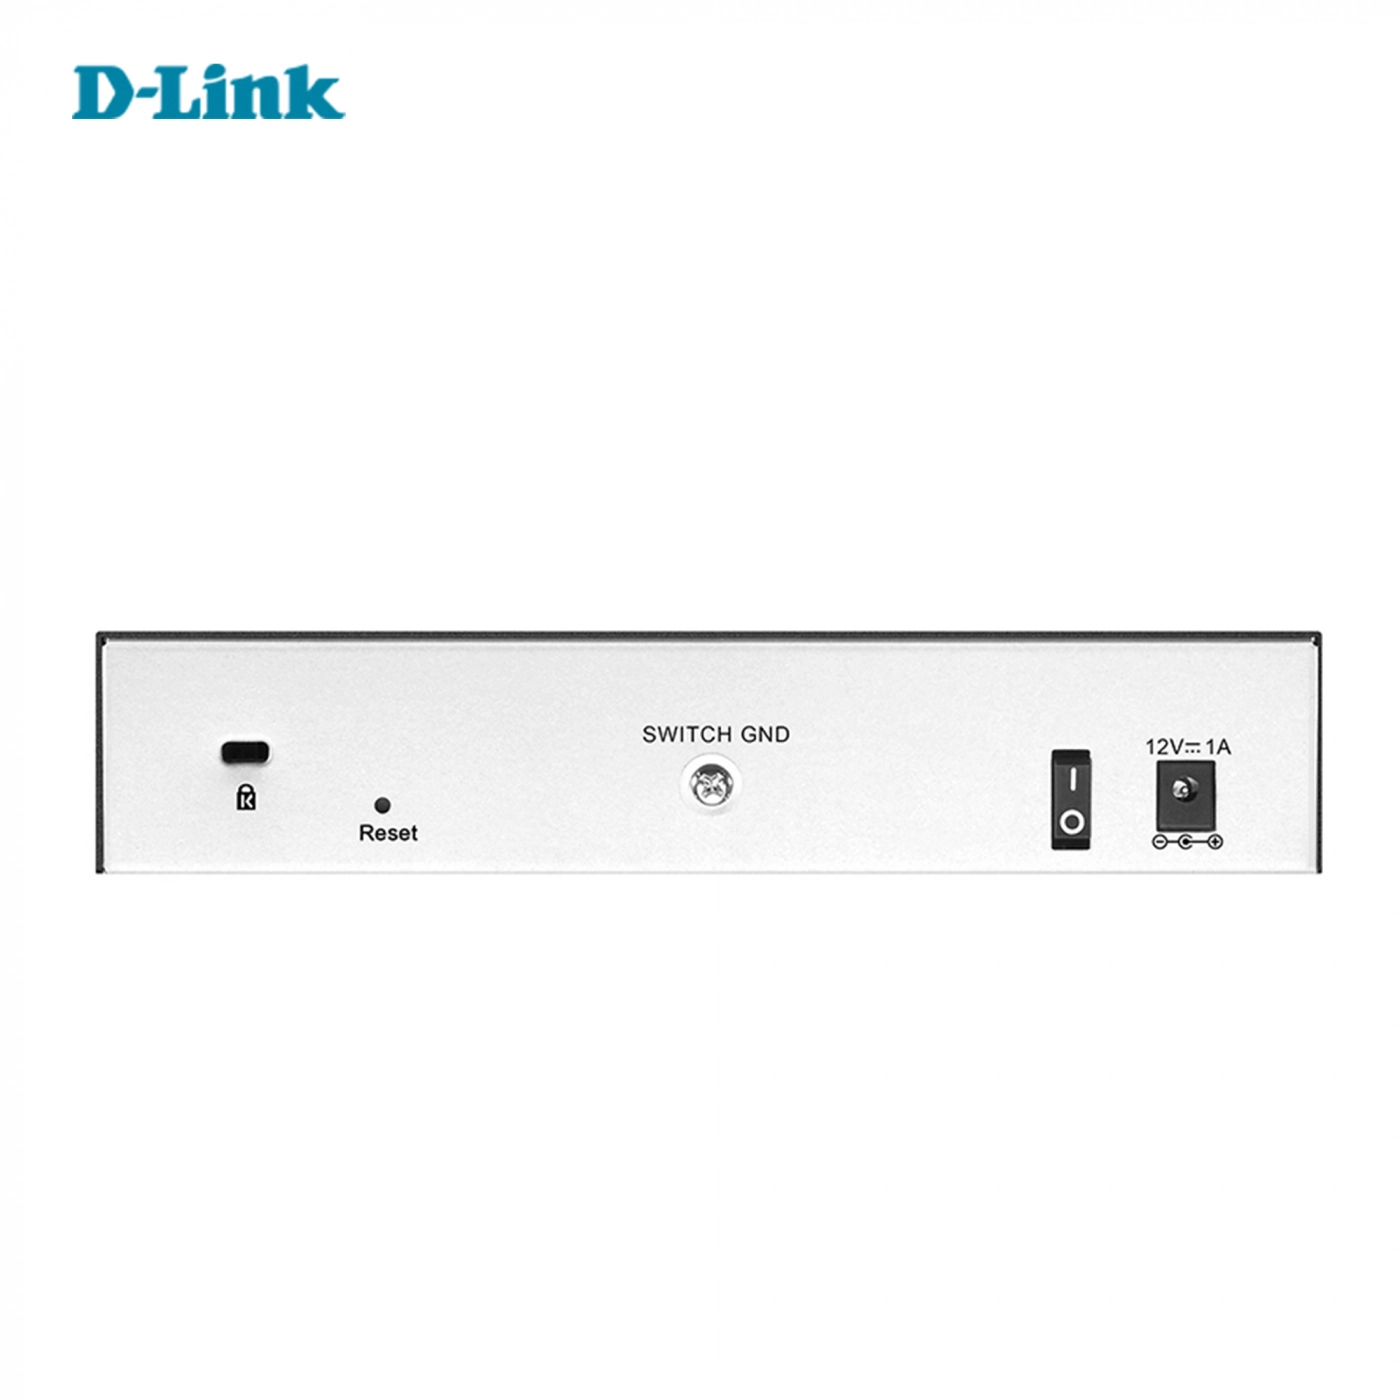 Купить Коммутатор D-Link DGS-1100-10/ME - фото 3